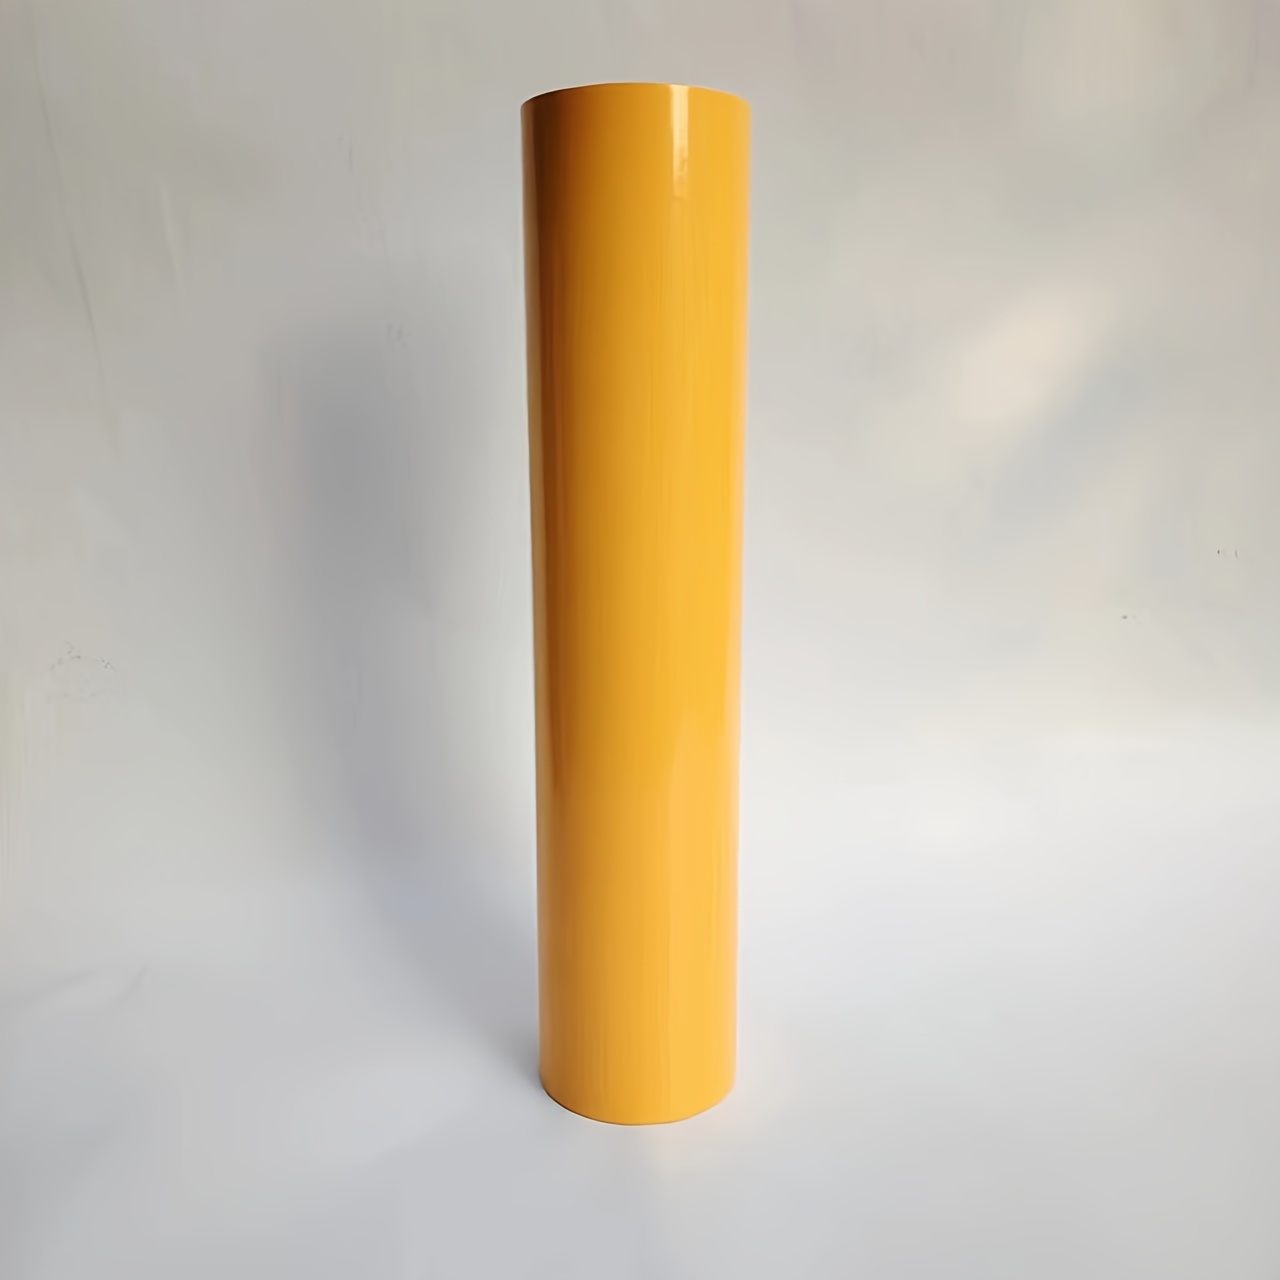 Rotolo di vinile adesivo permanente per Cricut, 30 x 305 cm, colore giallo,  per progetti artigianali, cartelli, scrapbooking (giallo lucido) :  : Casa e cucina